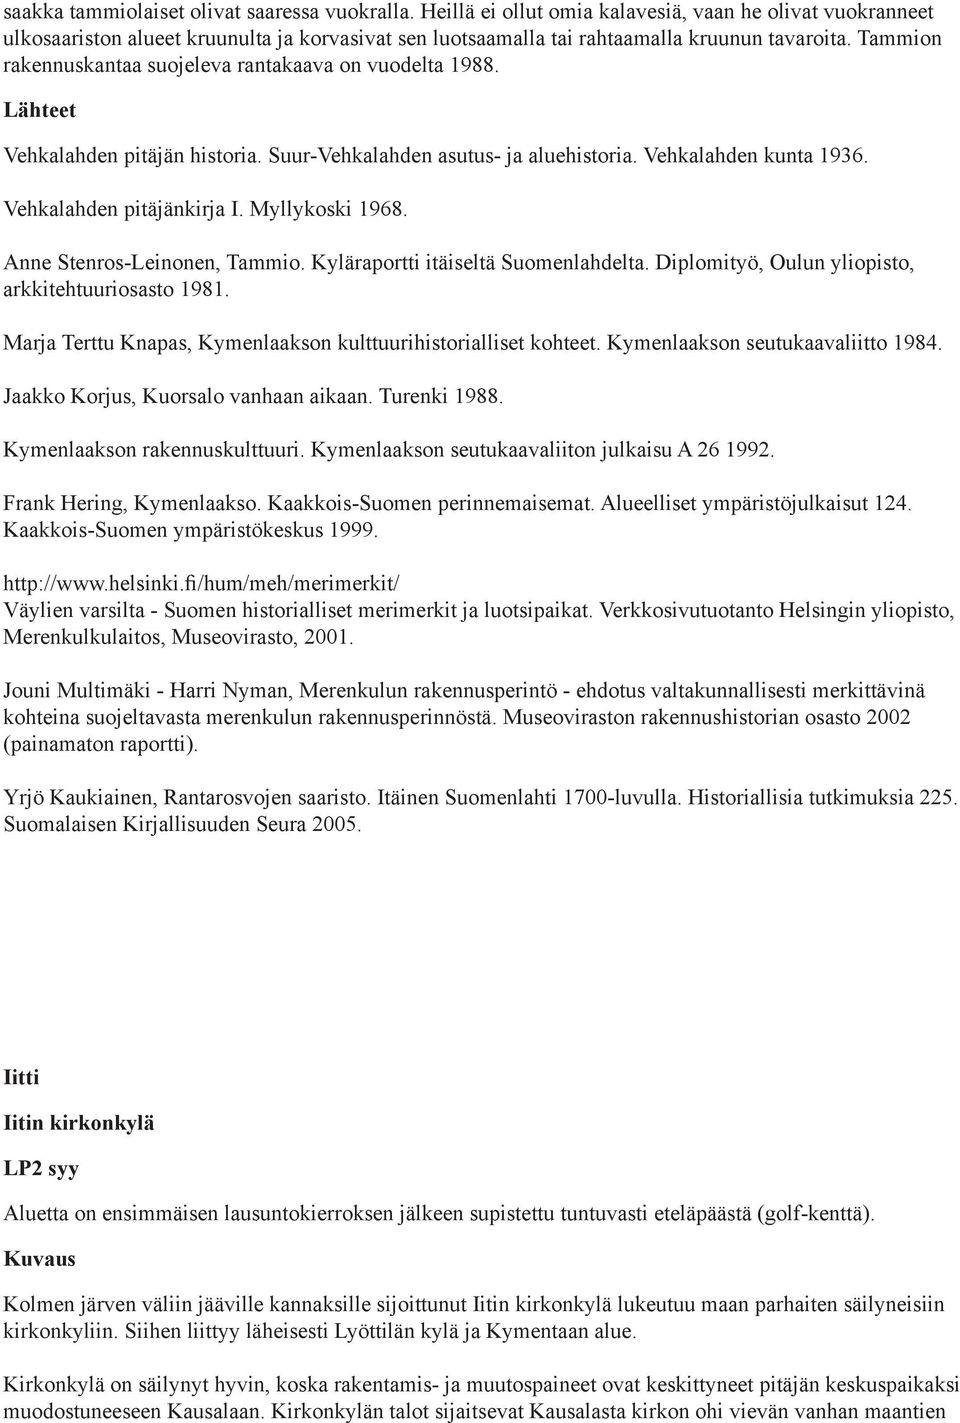 Tammion rakennuskantaa suojeleva rantakaava on vuodelta 1988. Vehkalahden pitäjän historia. Suur-Vehkalahden asutus- ja aluehistoria. Vehkalahden kunta 1936. Vehkalahden pitäjänkirja I.